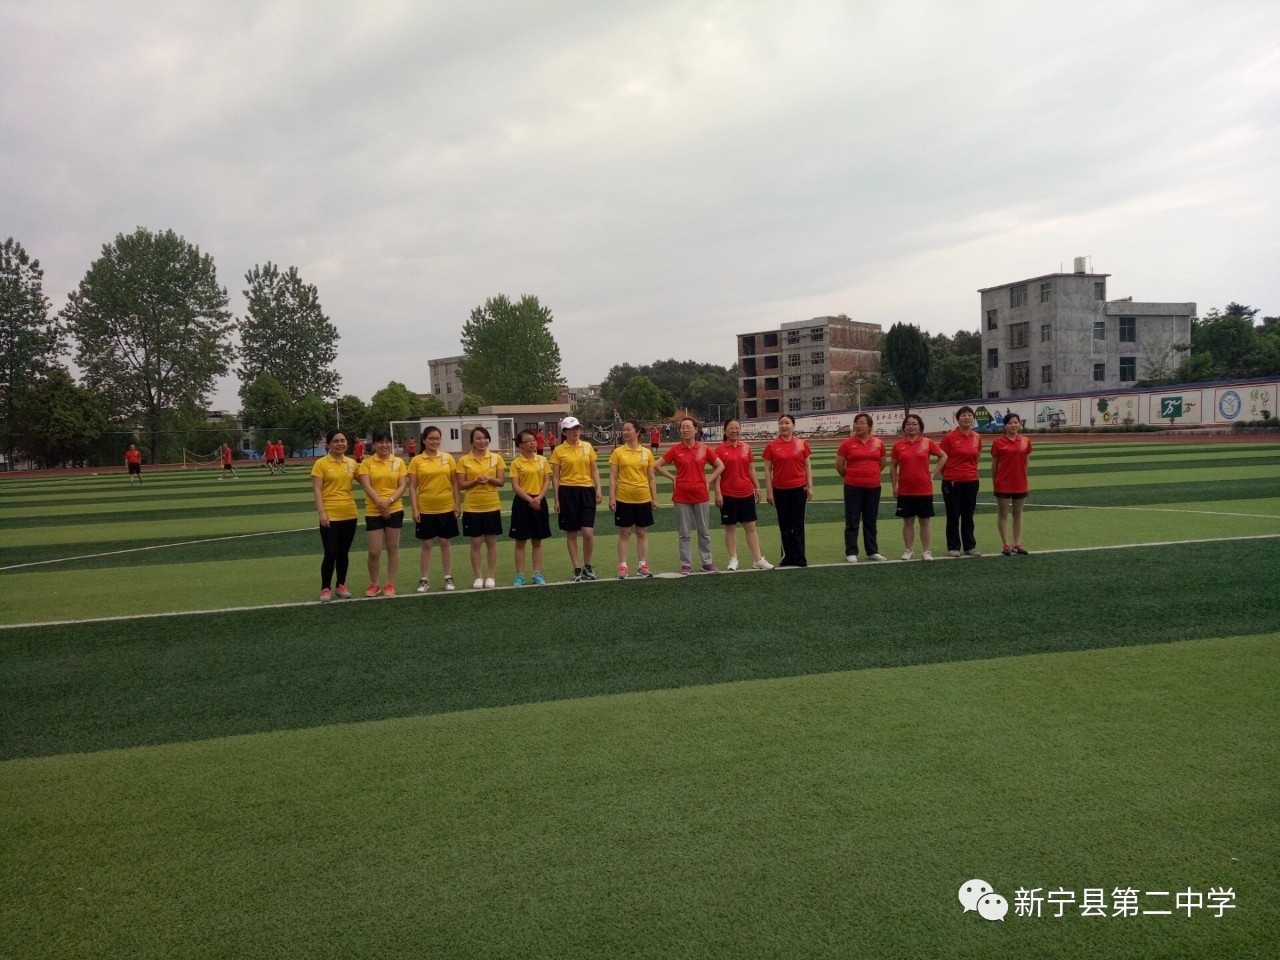 挥洒阳光, 激情足球——新宁二中举办首届教职工足球赛